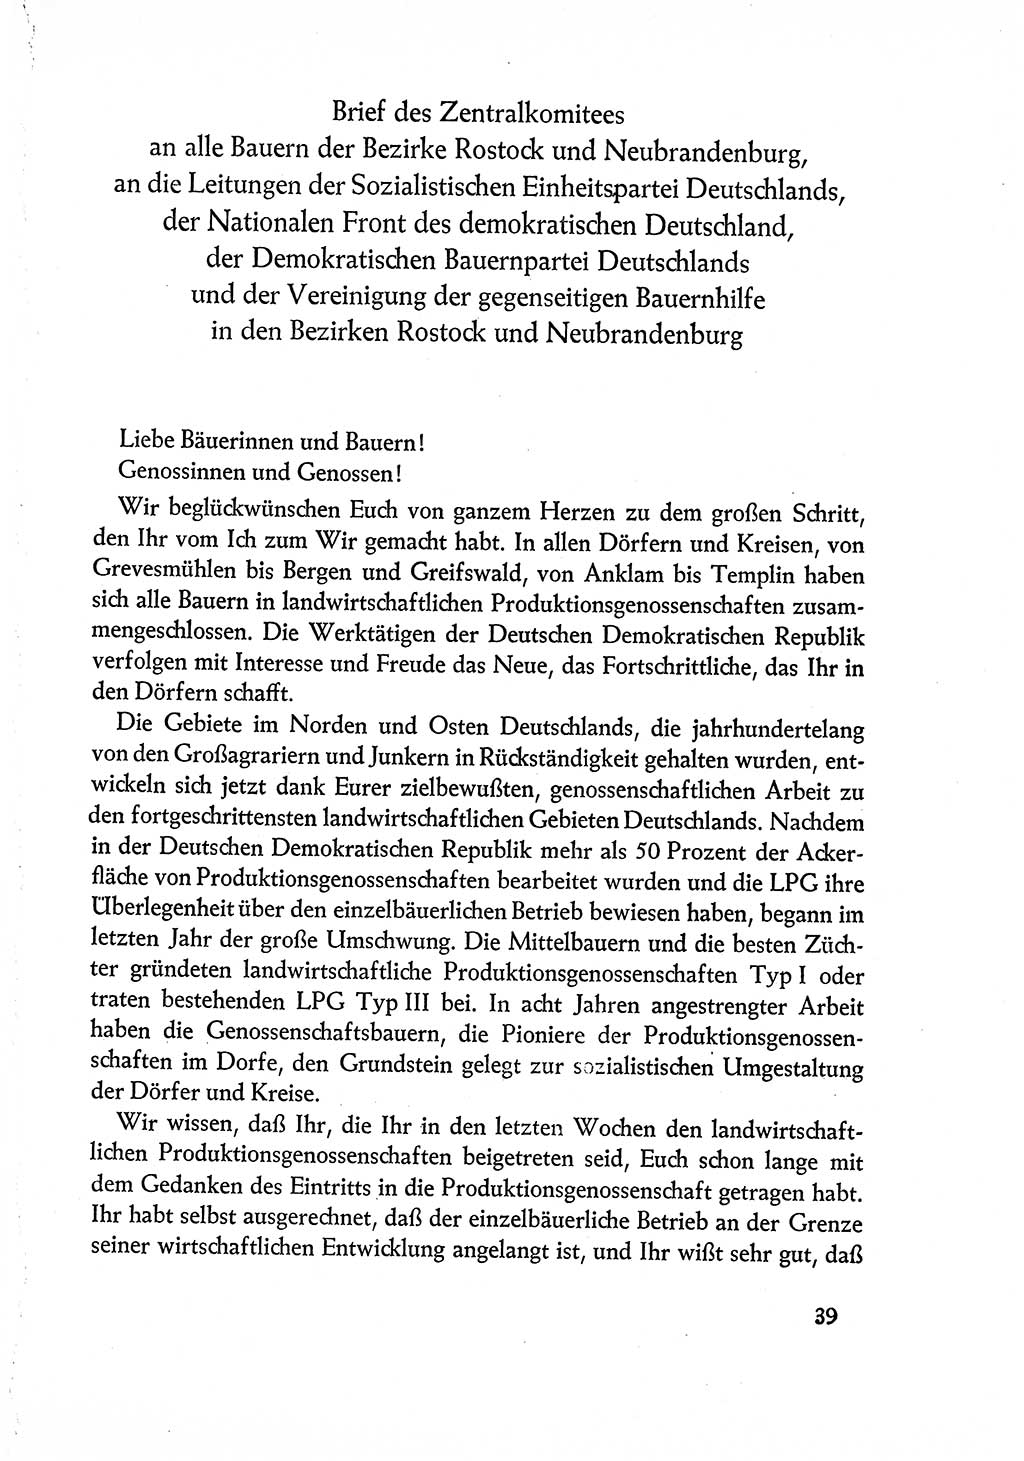 Dokumente der Sozialistischen Einheitspartei Deutschlands (SED) [Deutsche Demokratische Republik (DDR)] 1960-1961, Seite 39 (Dok. SED DDR 1960-1961, S. 39)